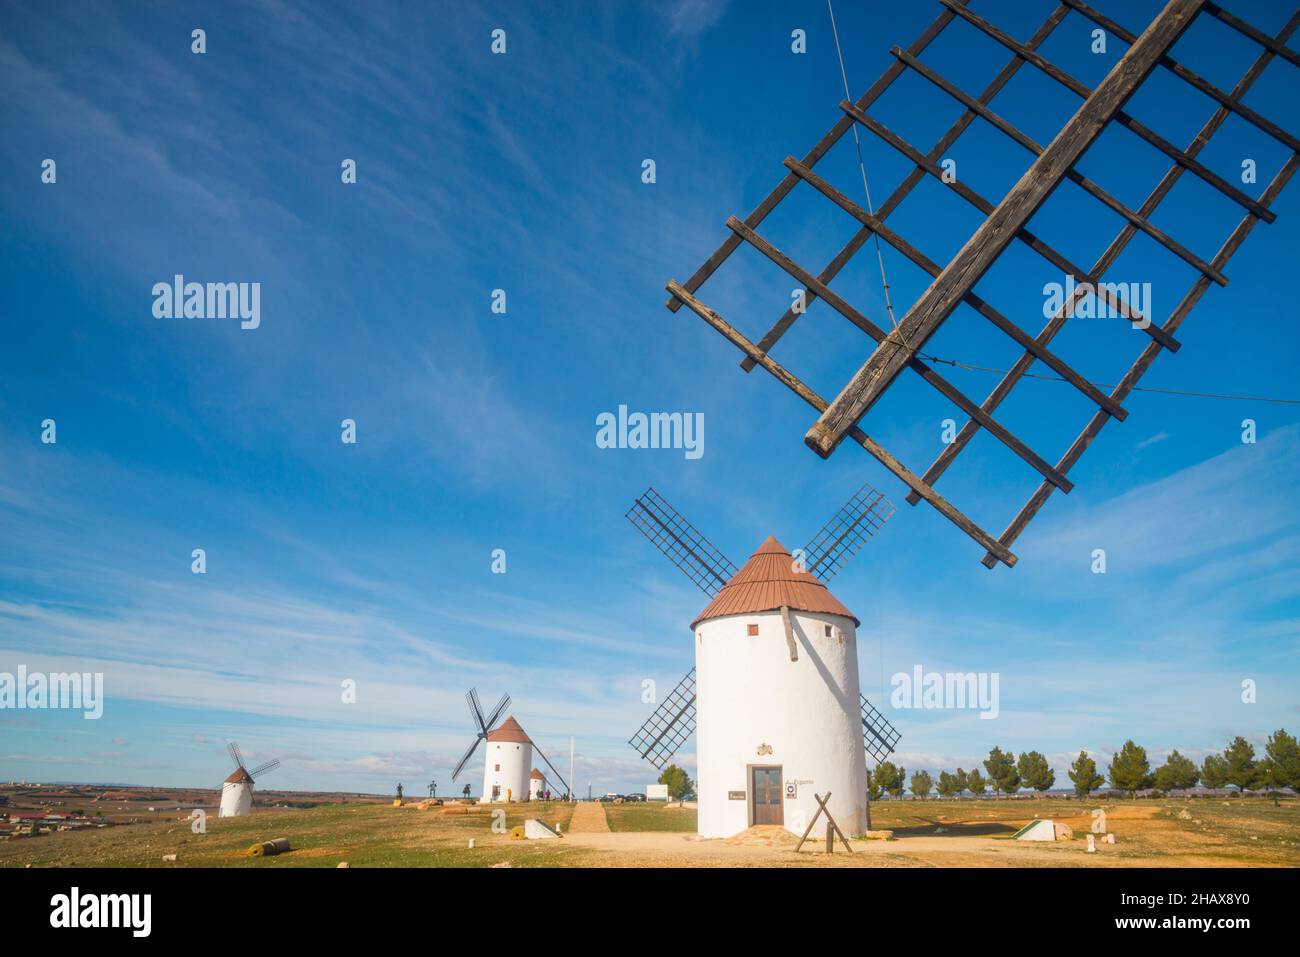 Windmills. Mota del Cuervo, Cuenca province, Castilla La Mancha, Spain. Stock Photo